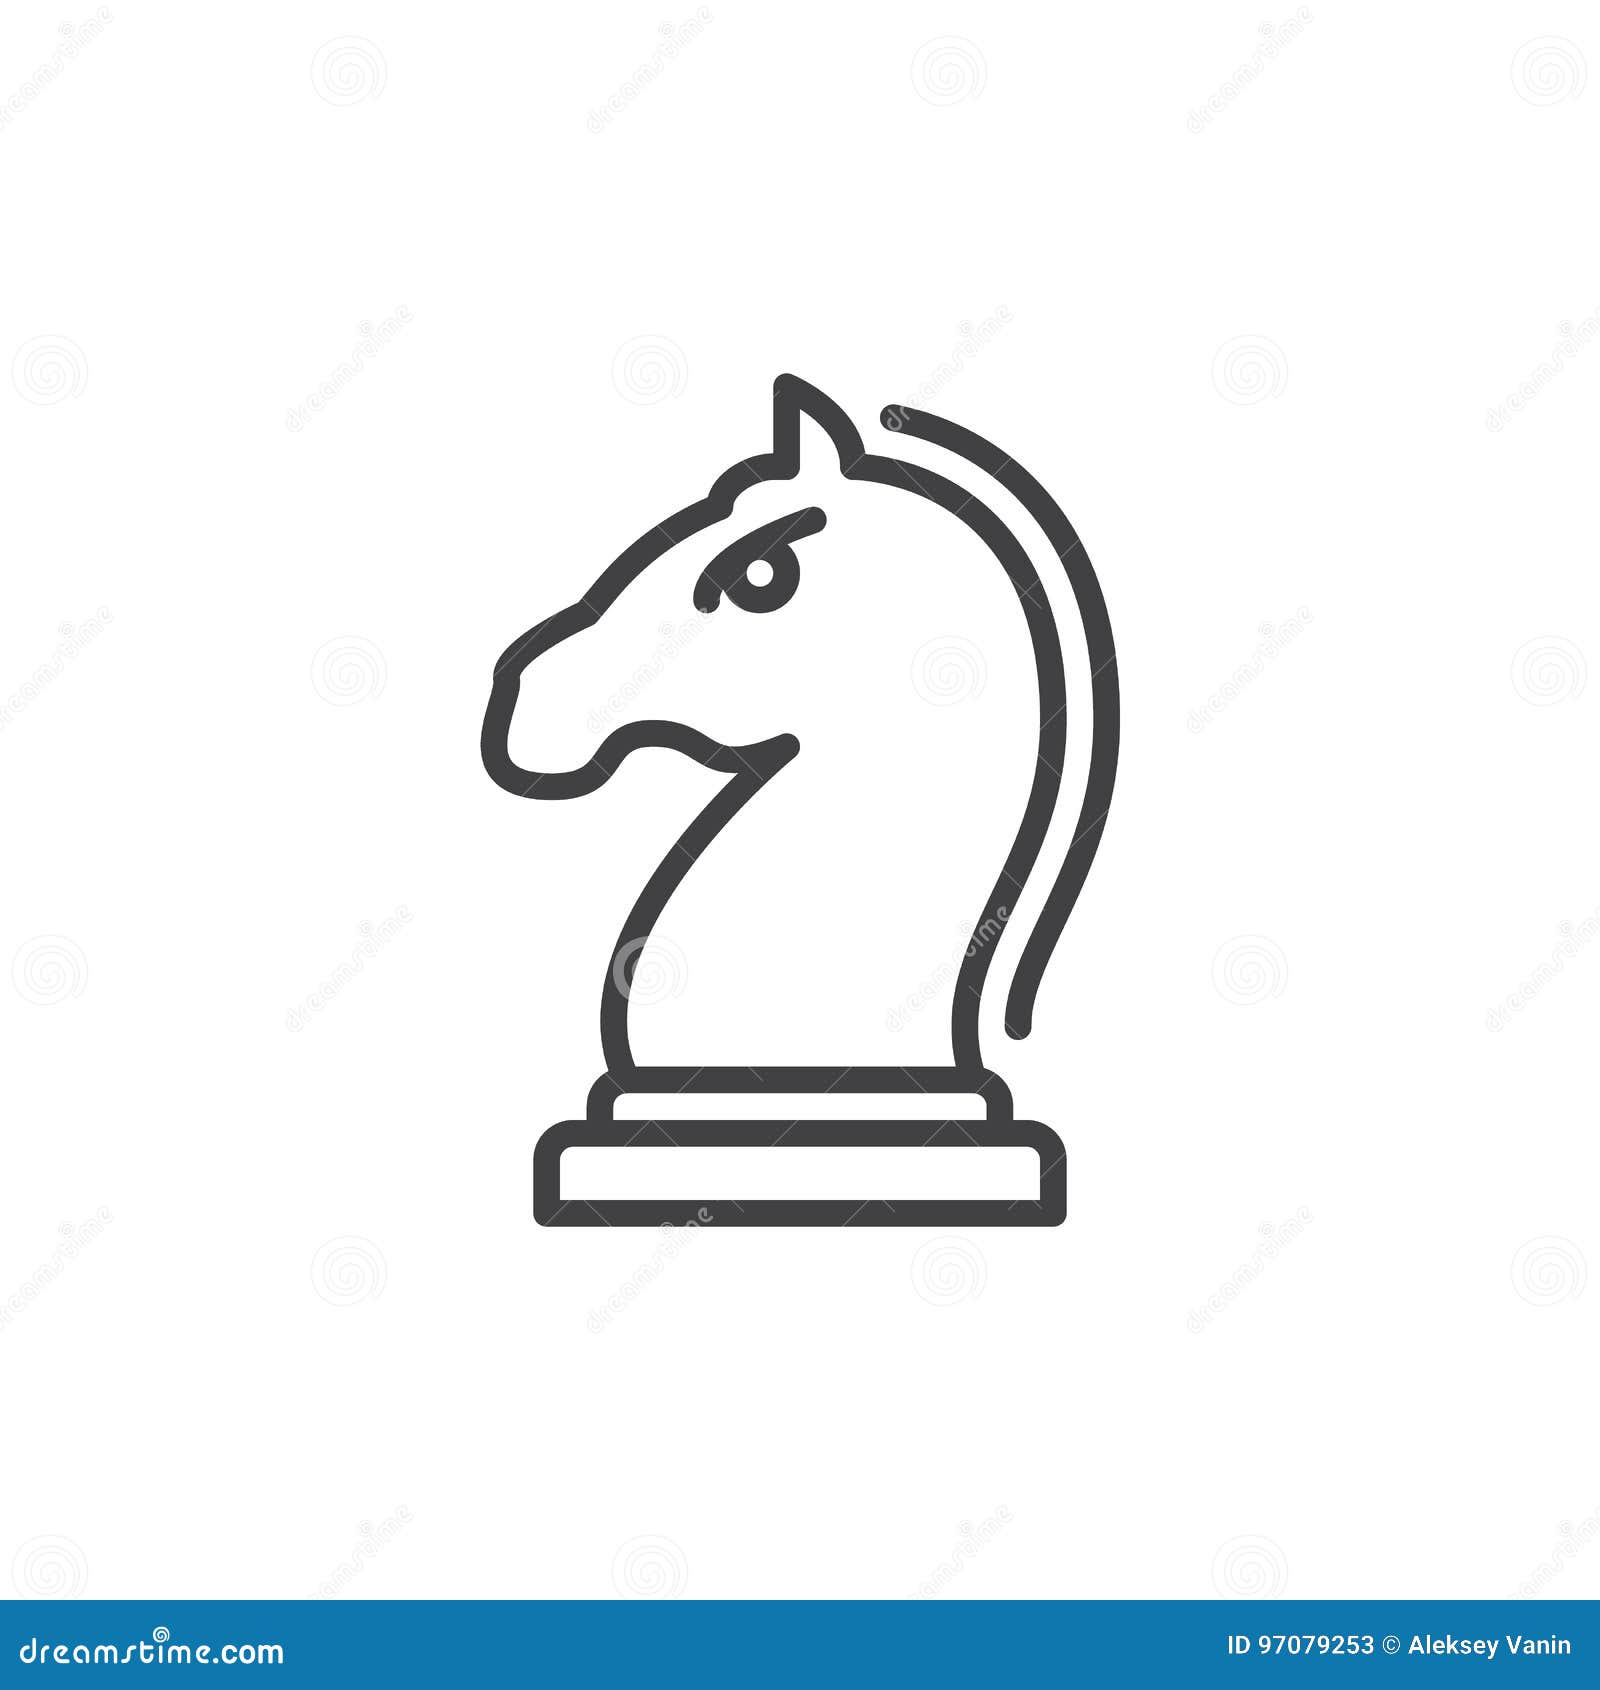 Um jogo de xadrez com um cavalo